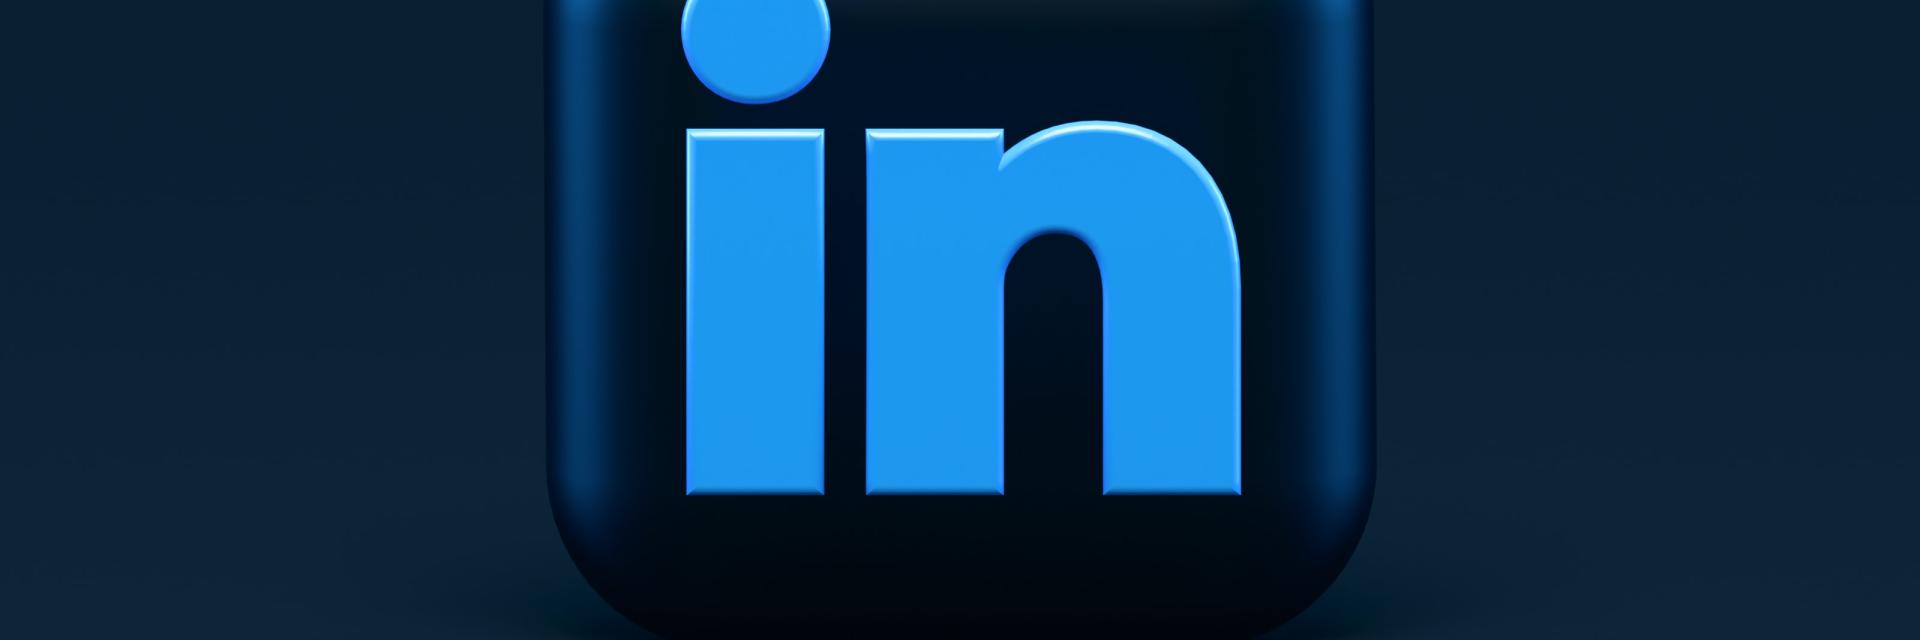 Norsk Stål har fått over 1000 følgere på Linkedin!